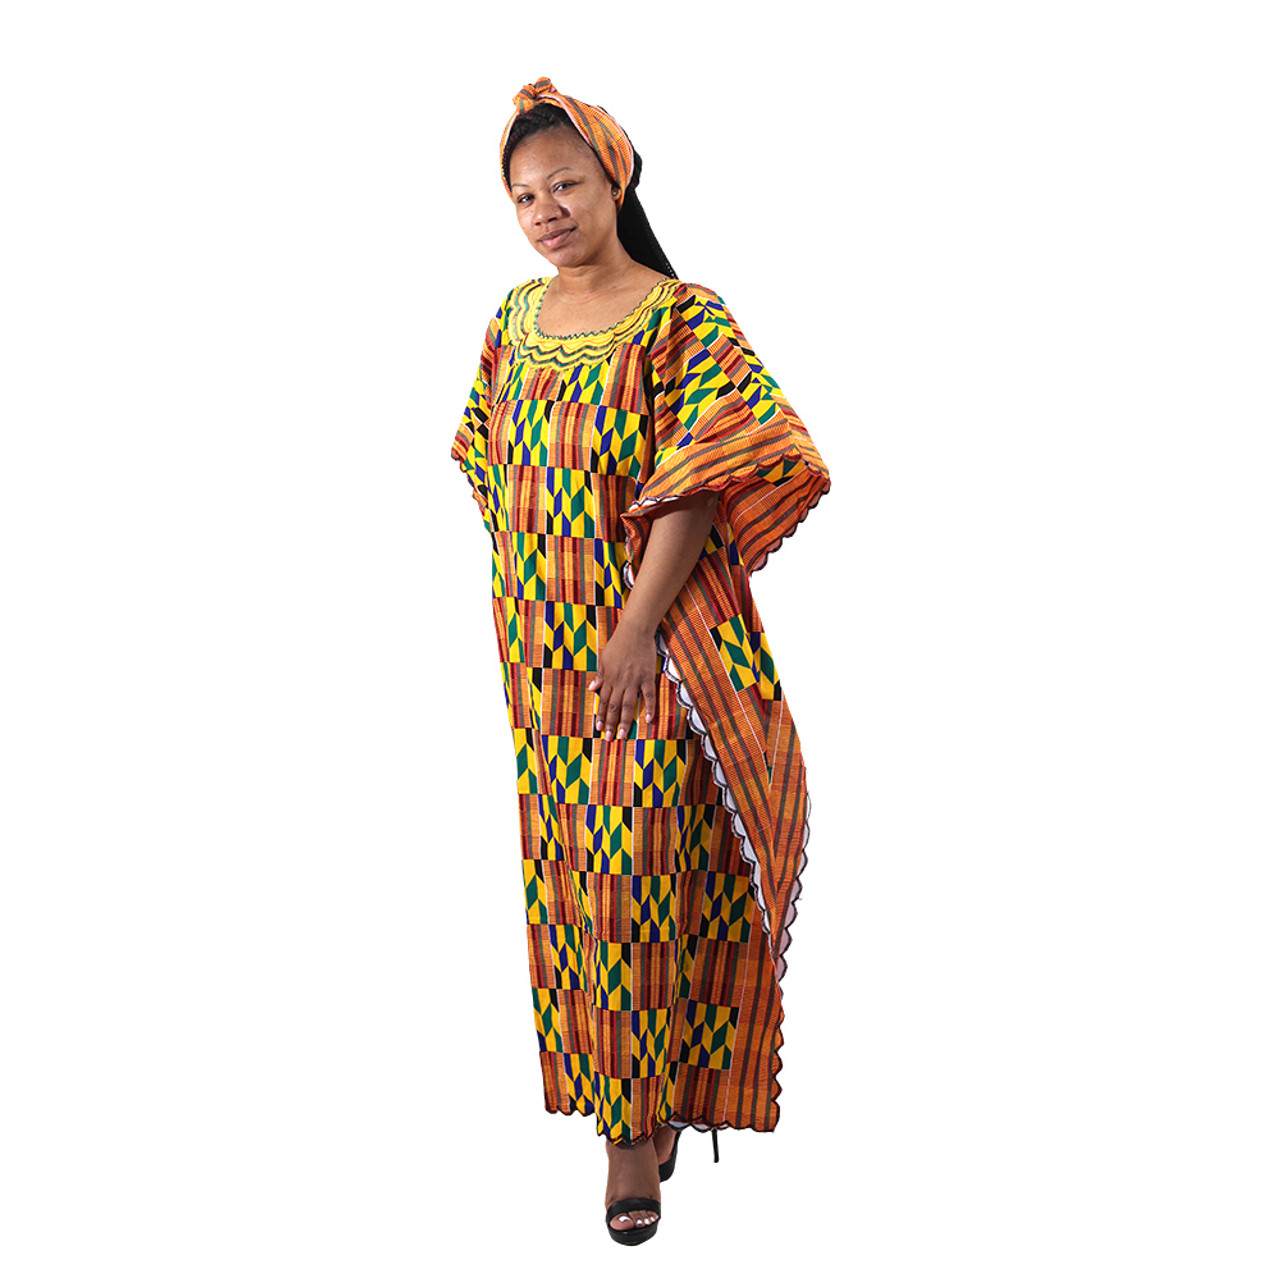 African Kente Dress, African Women Clothing, African Attire